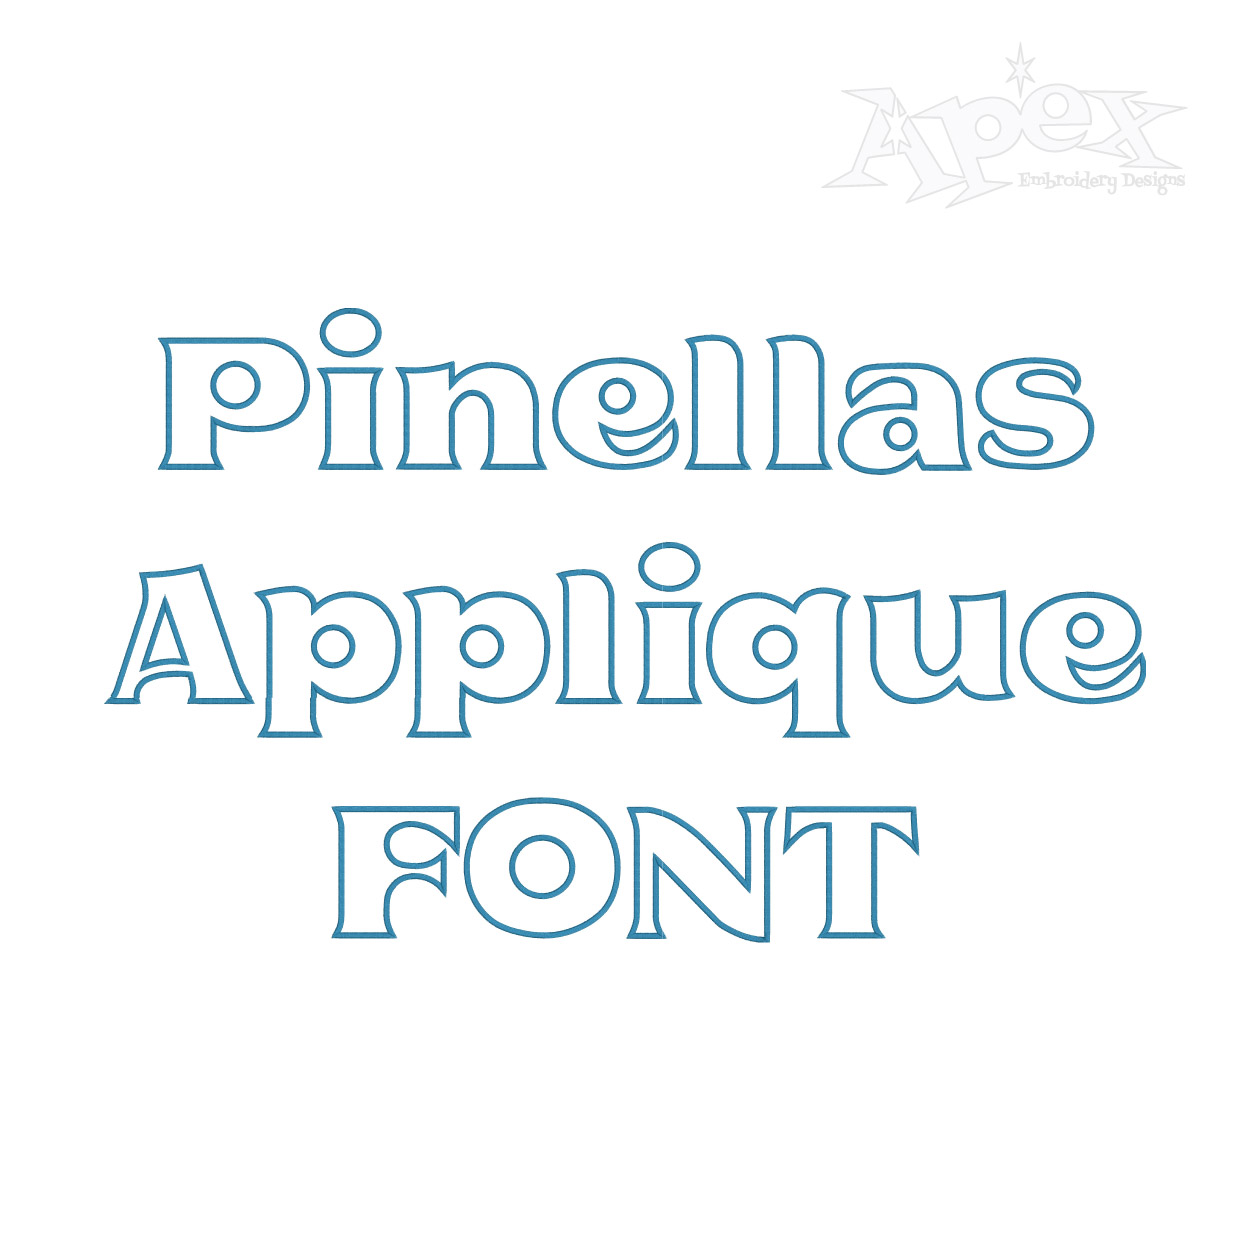 Pinellas Appliqué Embroidery Font